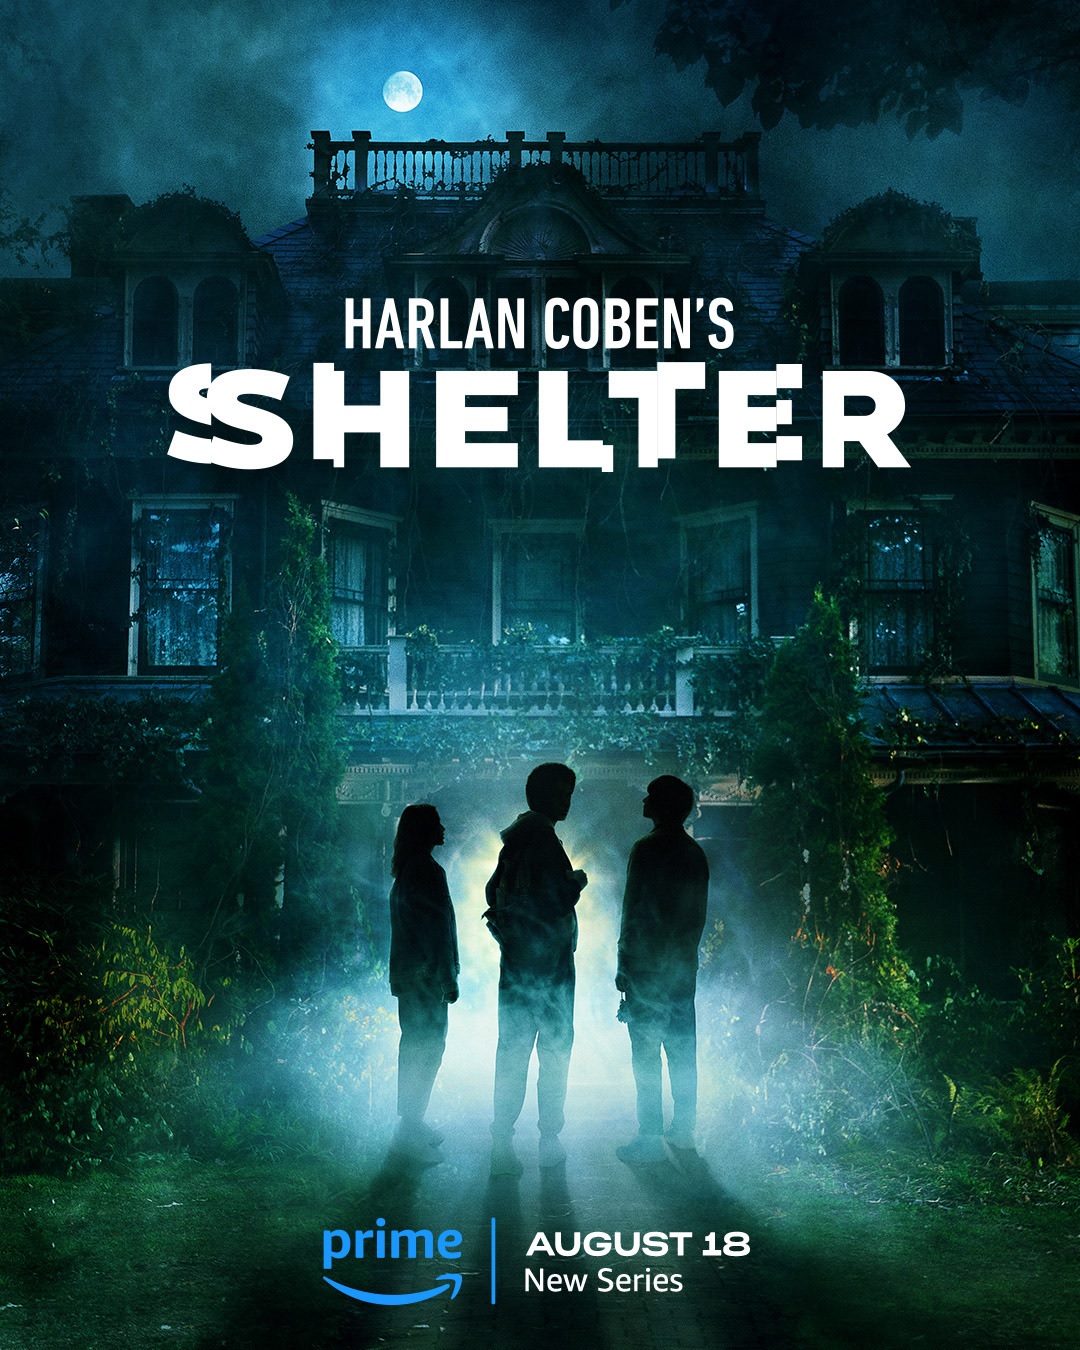 Harlan Cobens Shelter plakat 2